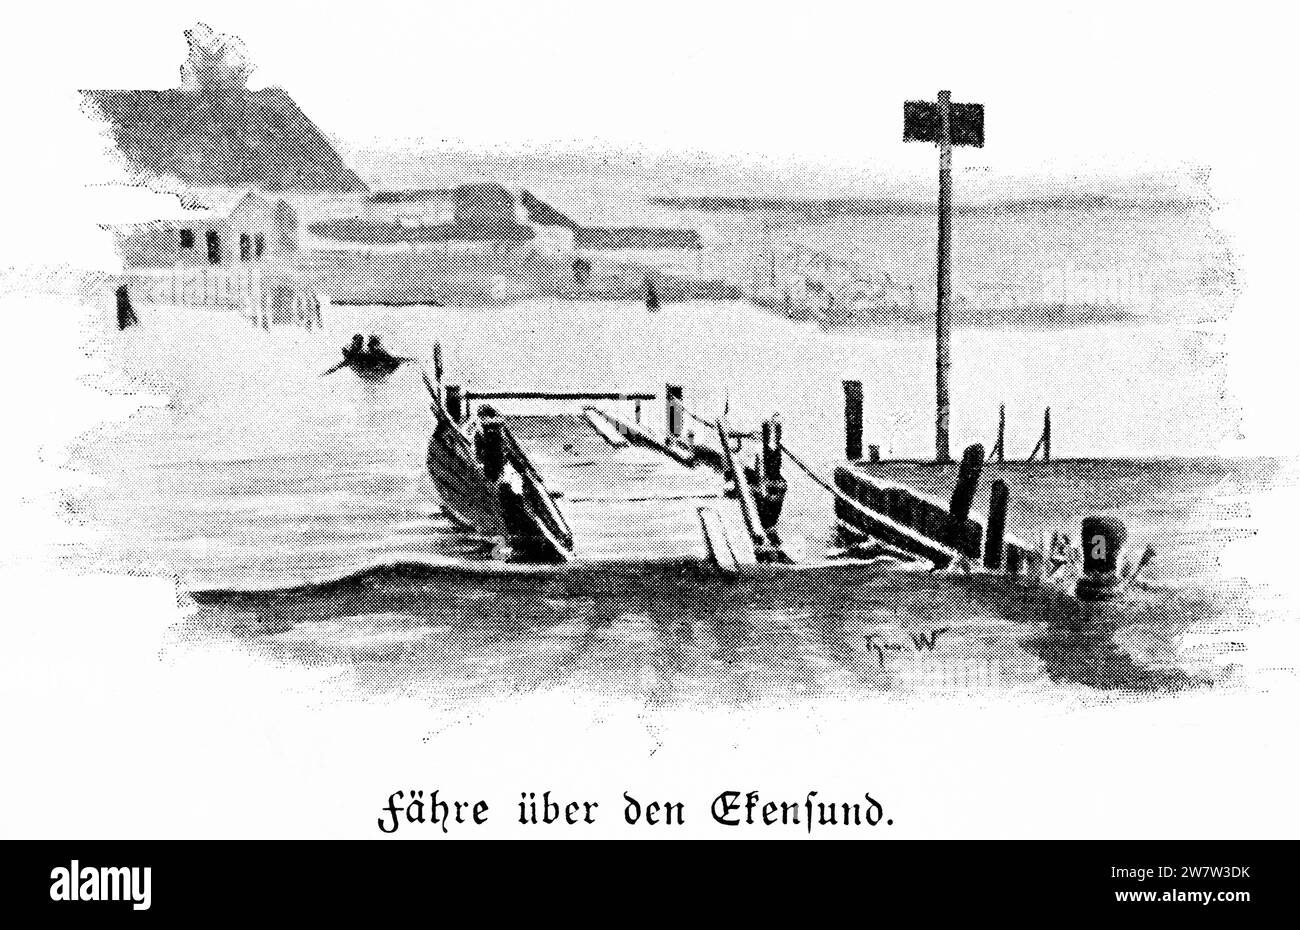 Traghetto attraverso Egernsund o Ekensund, totay Danimarca, sul fiordo di Flensburg, Schleswig-Holstein, Germania settentrionale, illustrazione istrorica 1896 Foto Stock